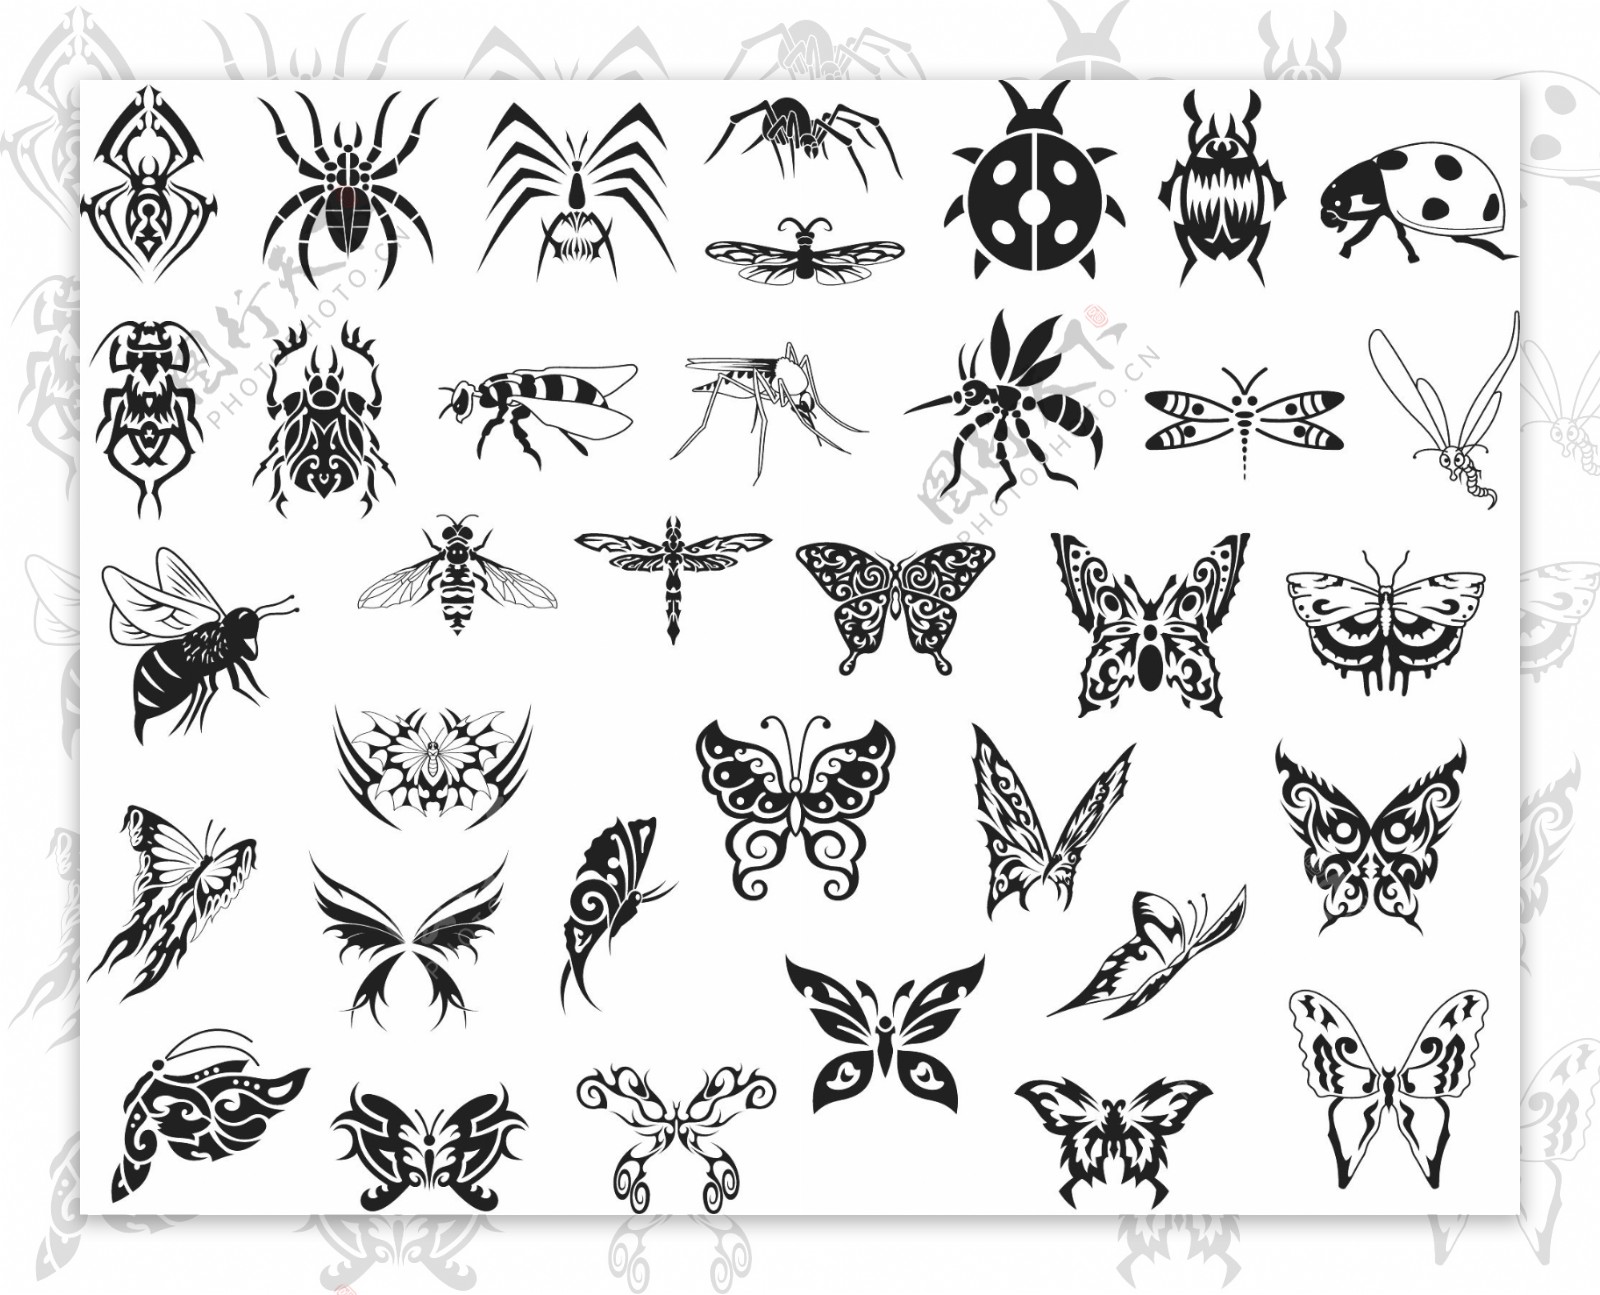 蝴蝶和昆虫剪影